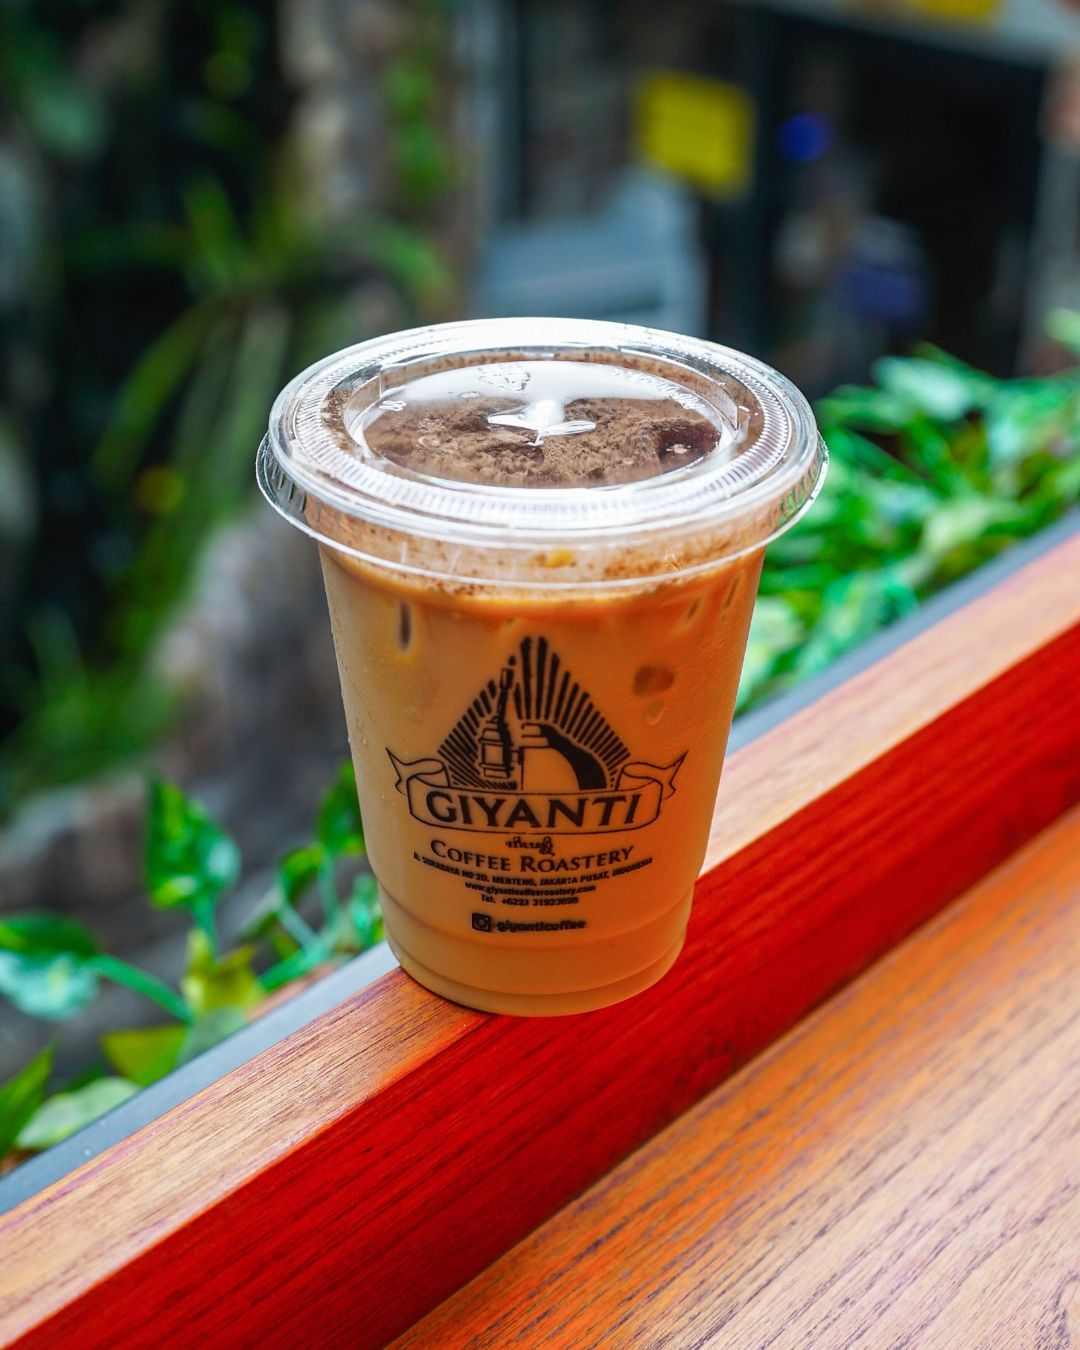 Giyanti Coffee